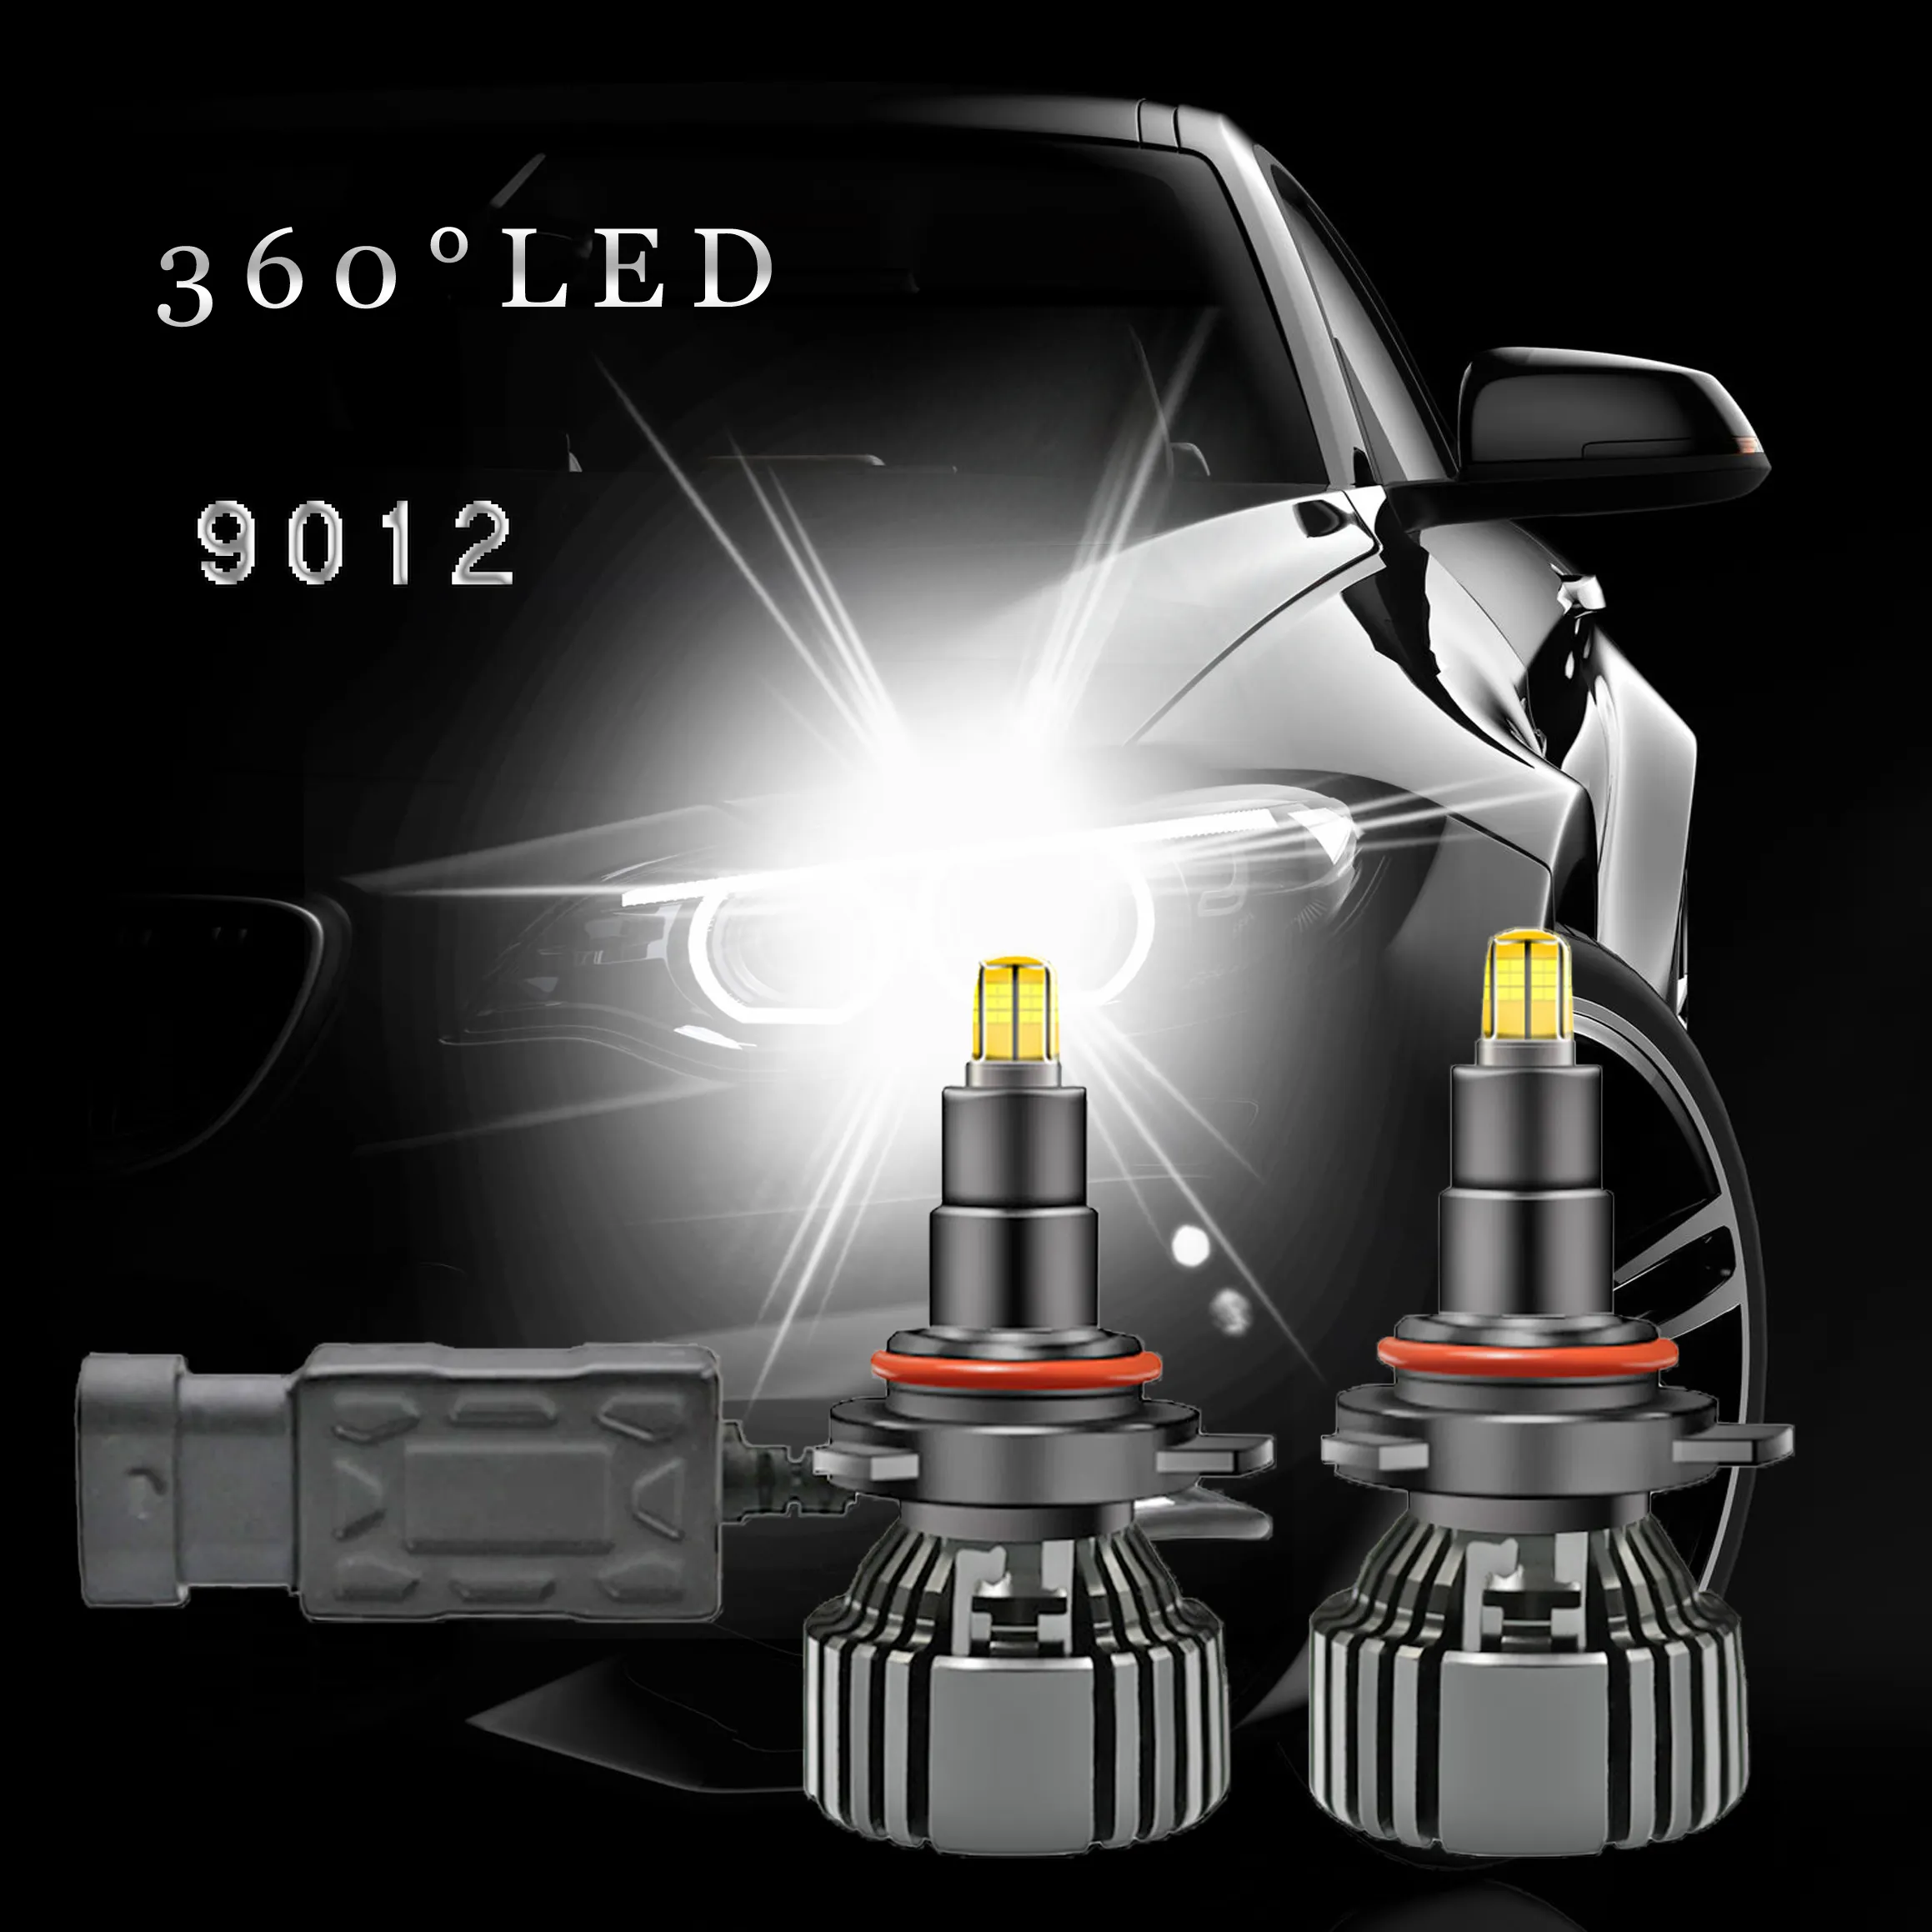 YF Wholesale Factory 12V 24V 60W 8000LM 6500K Led Lamp H1 H3 H4 H7 H11 H13 9012 9004 9005 9006 9007 IP68 Car Led Headlight Bulbs